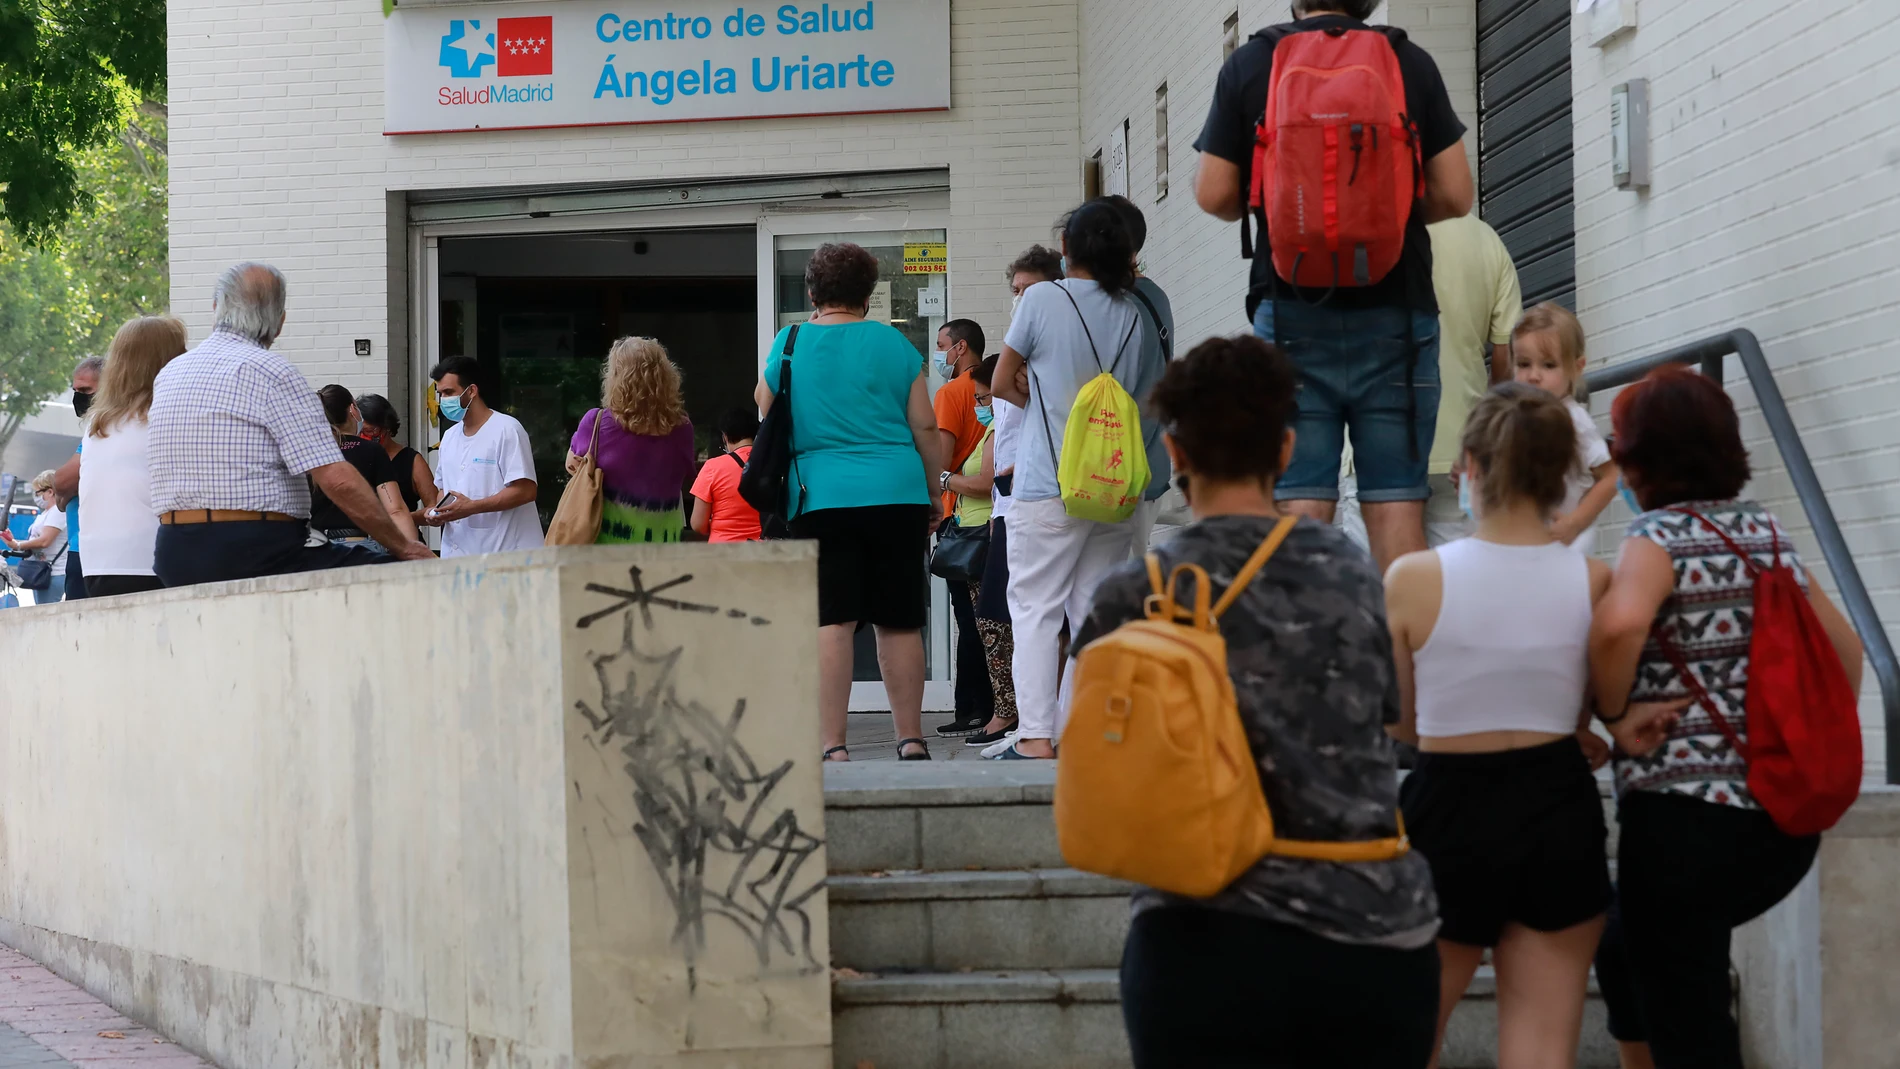 Colas en la puerta del Centro de Salud Angela Uriarte en Madrid